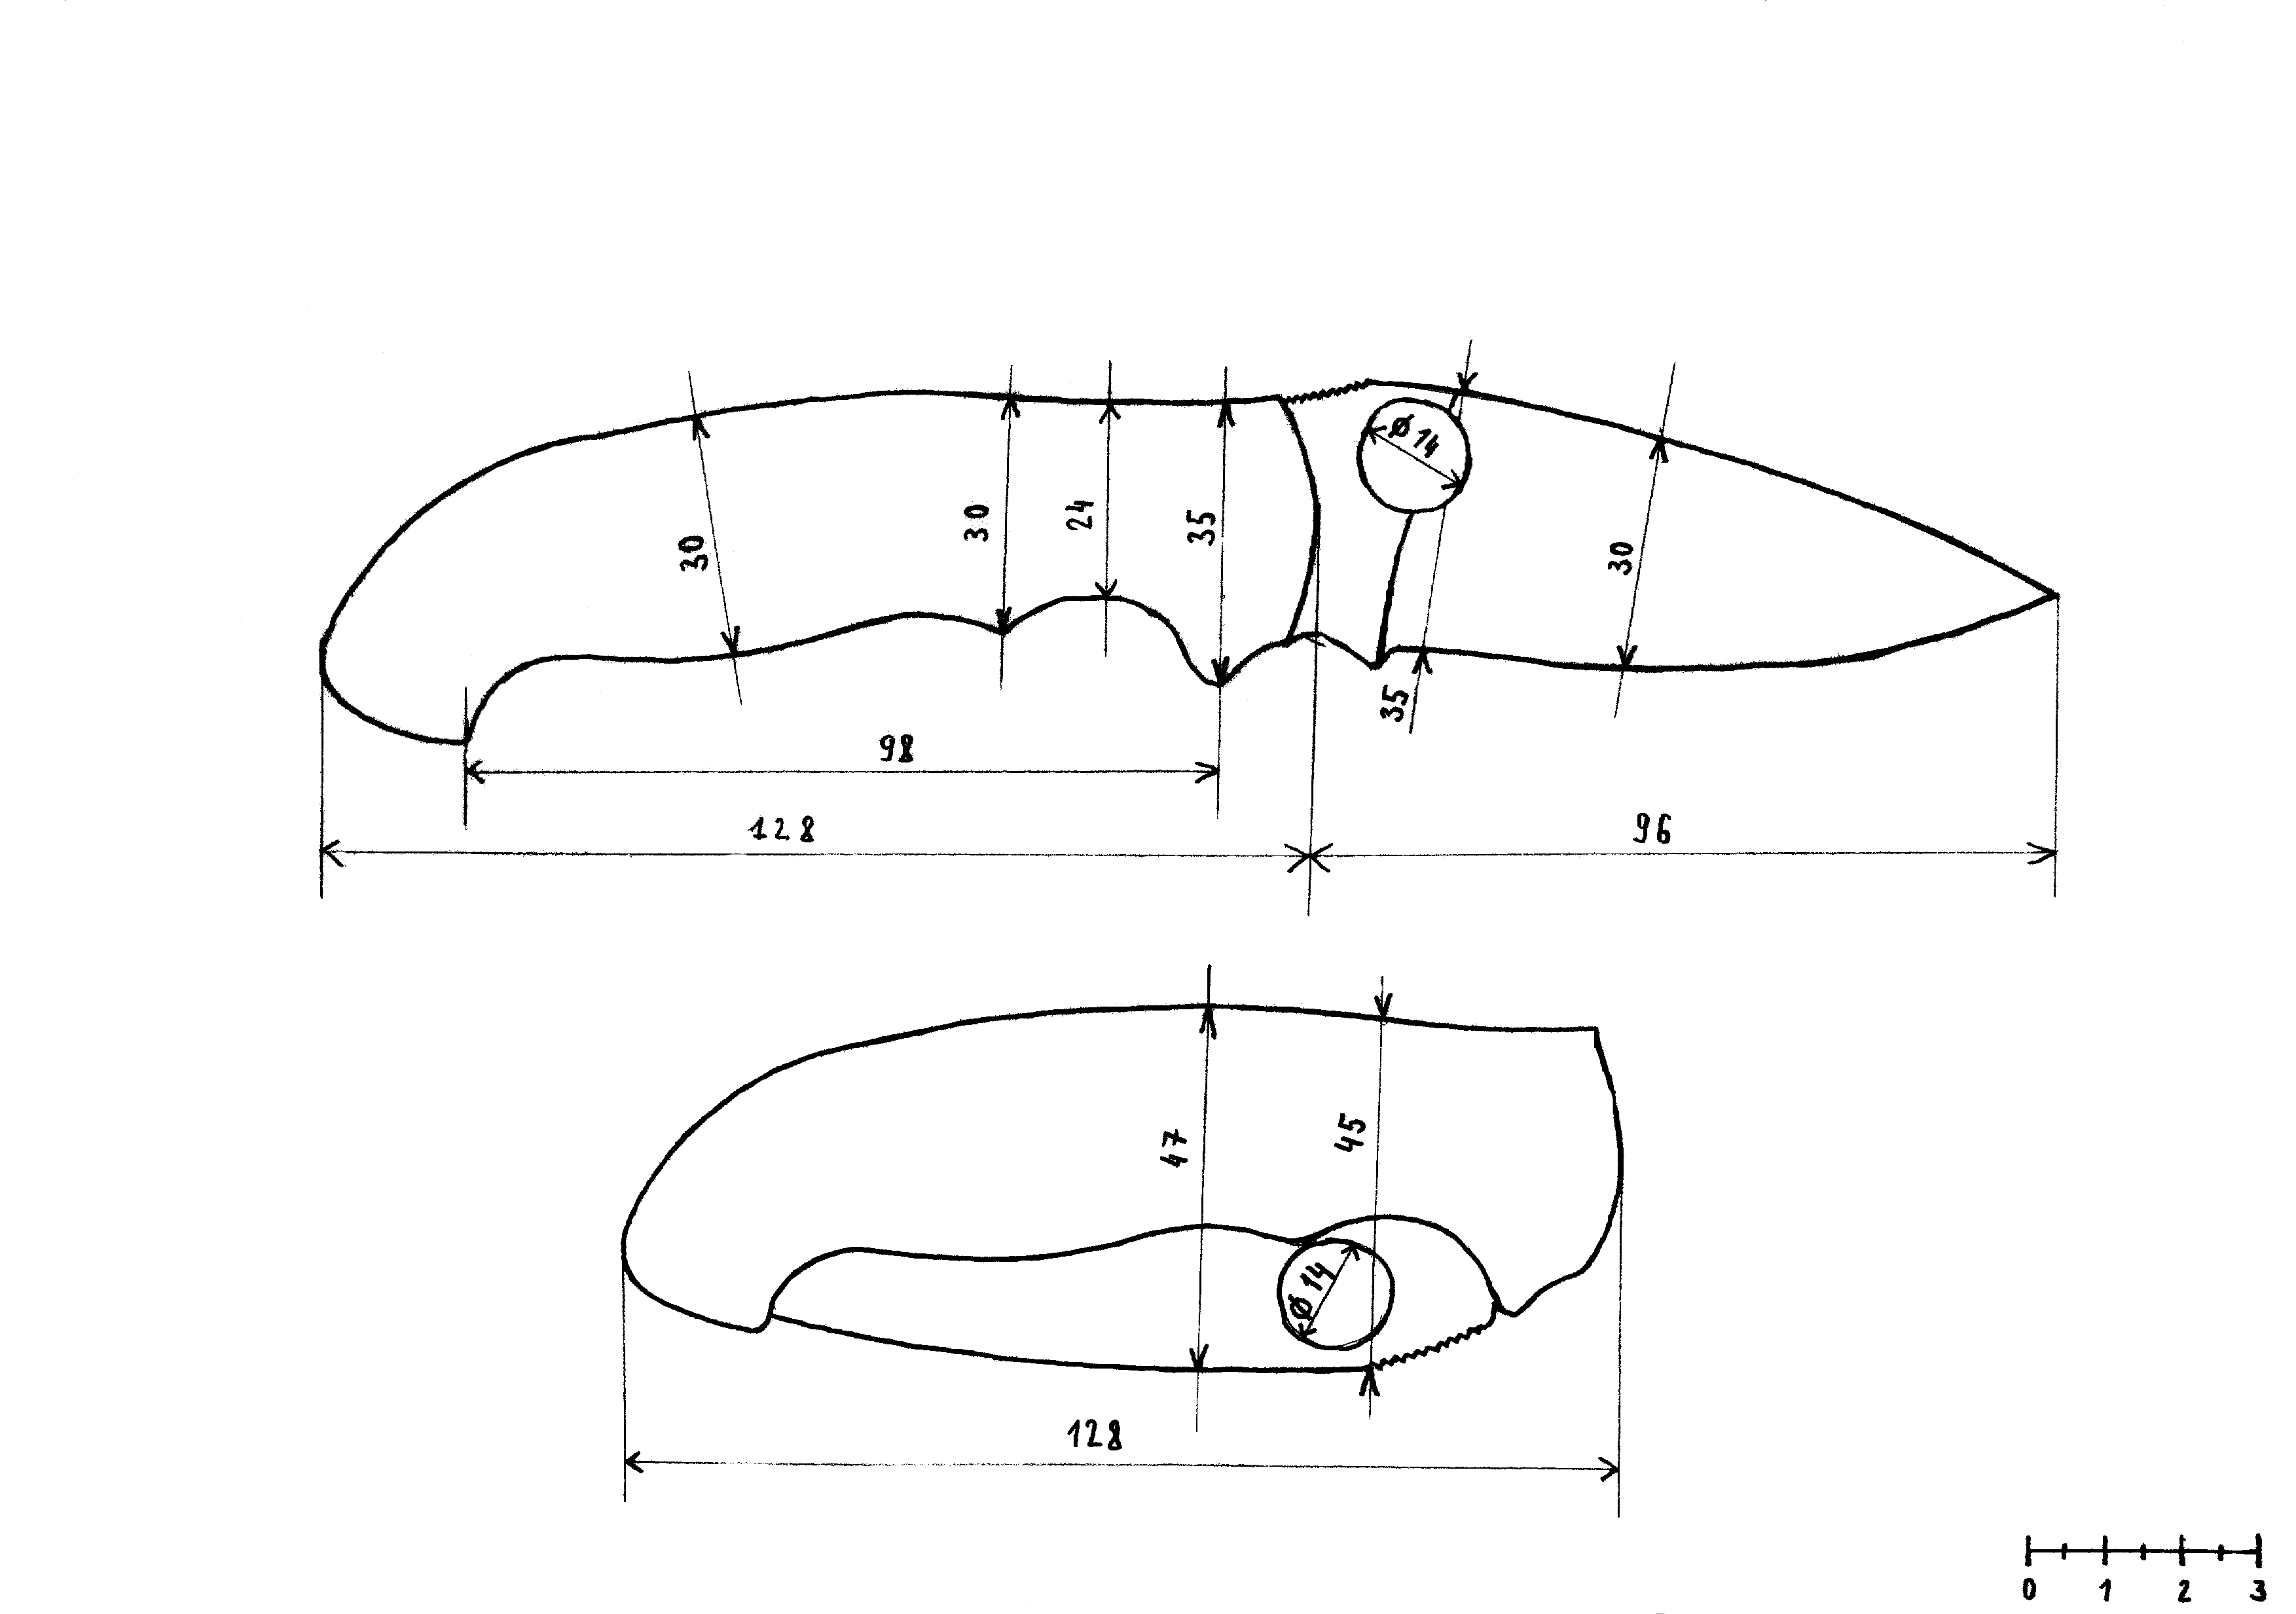 Нож из диска циркулярной пилы по дереву дискового типа: как сделать своими руками, пошаговая инструкция изготовления охотничьего без закалки, чертежи, плюсы и минусы